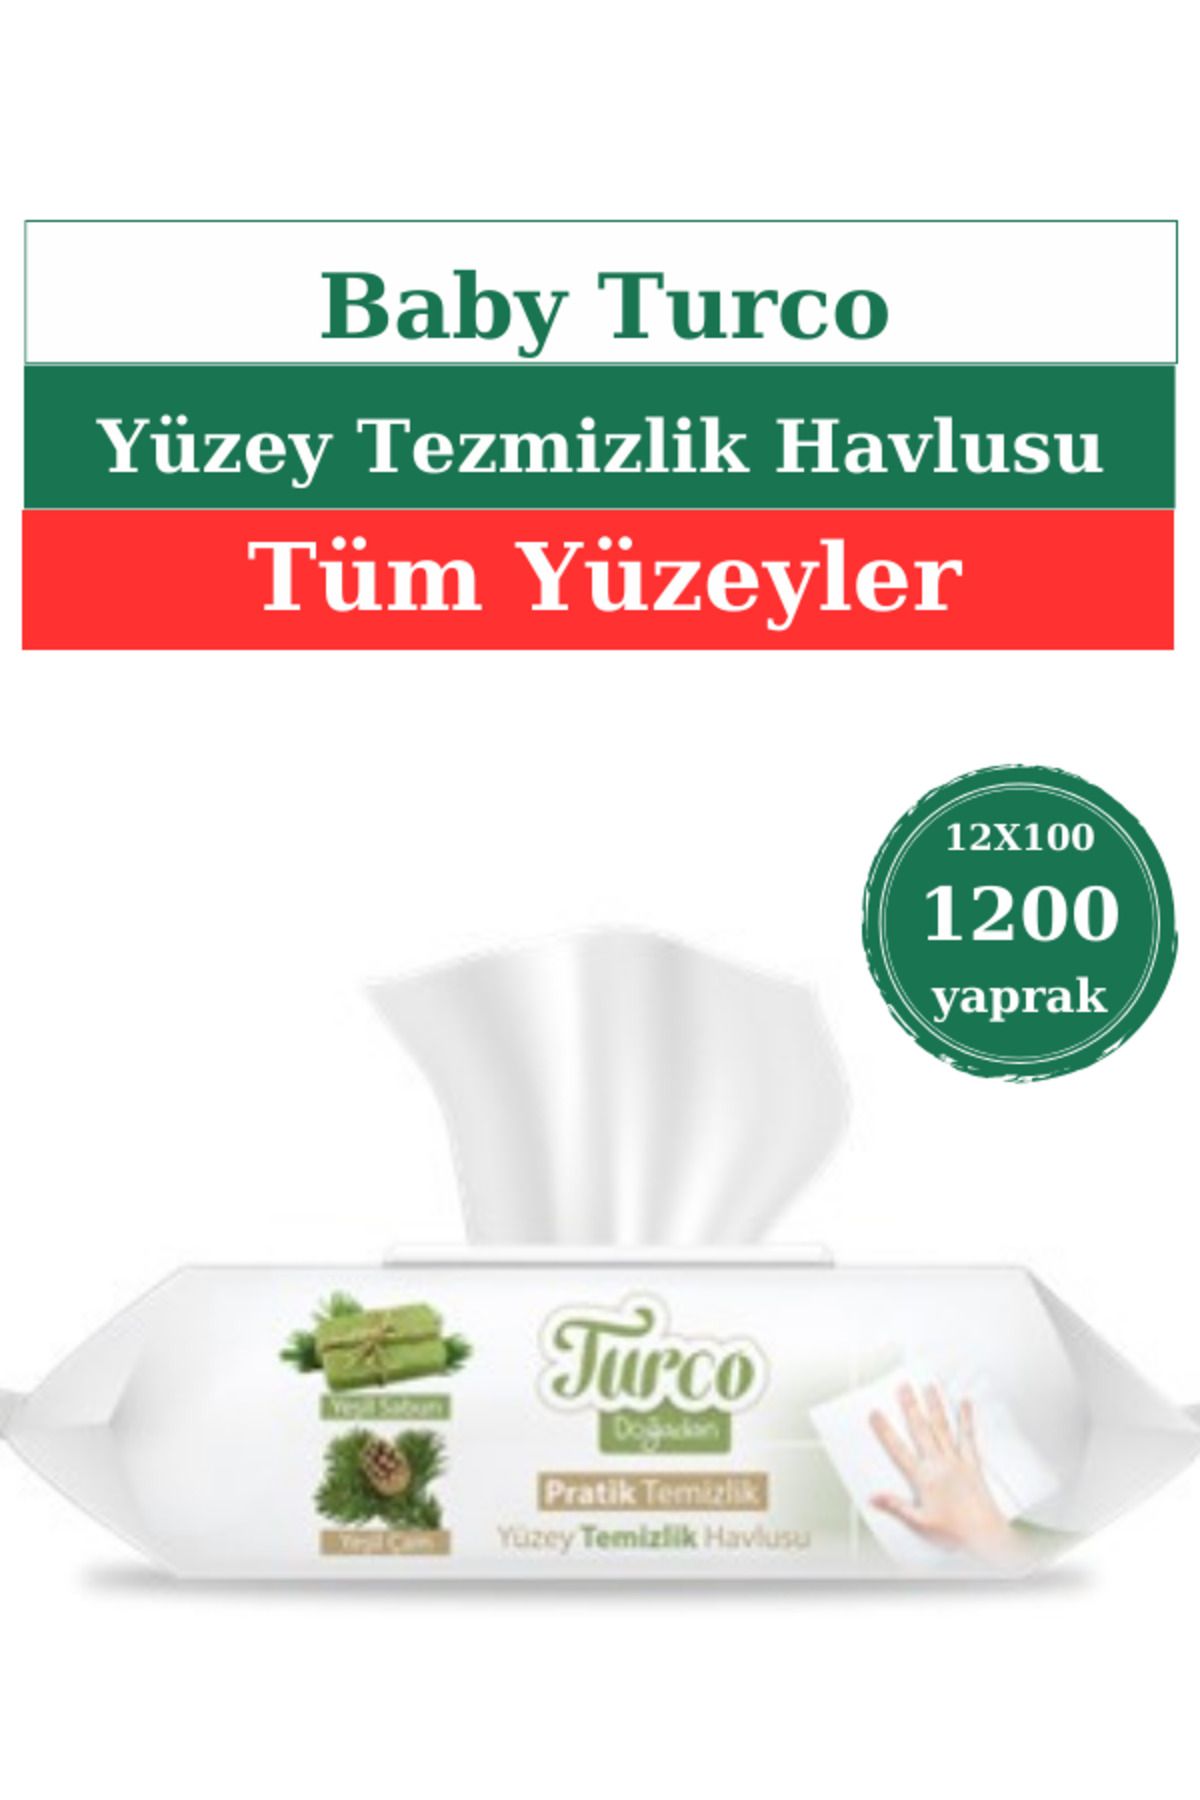 Turco Doğadan Pratik Temizlik Pratik Temizlik Yüzey Temizlik Havlusu 12x100 (1200 Yaprak)